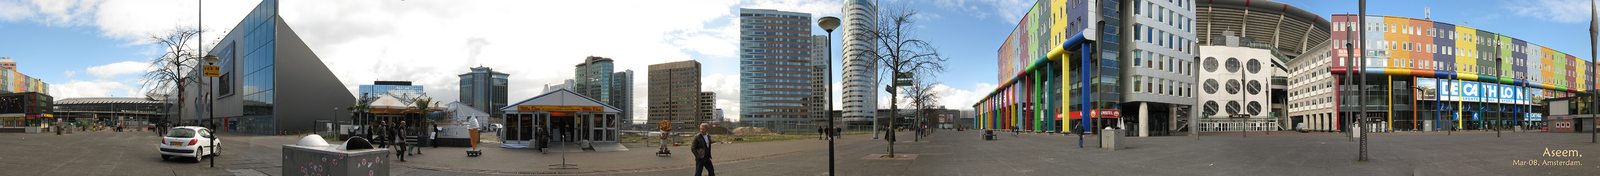 Панорамный вид окрестности «Амстердам-арены» 18 марта 2008 года.